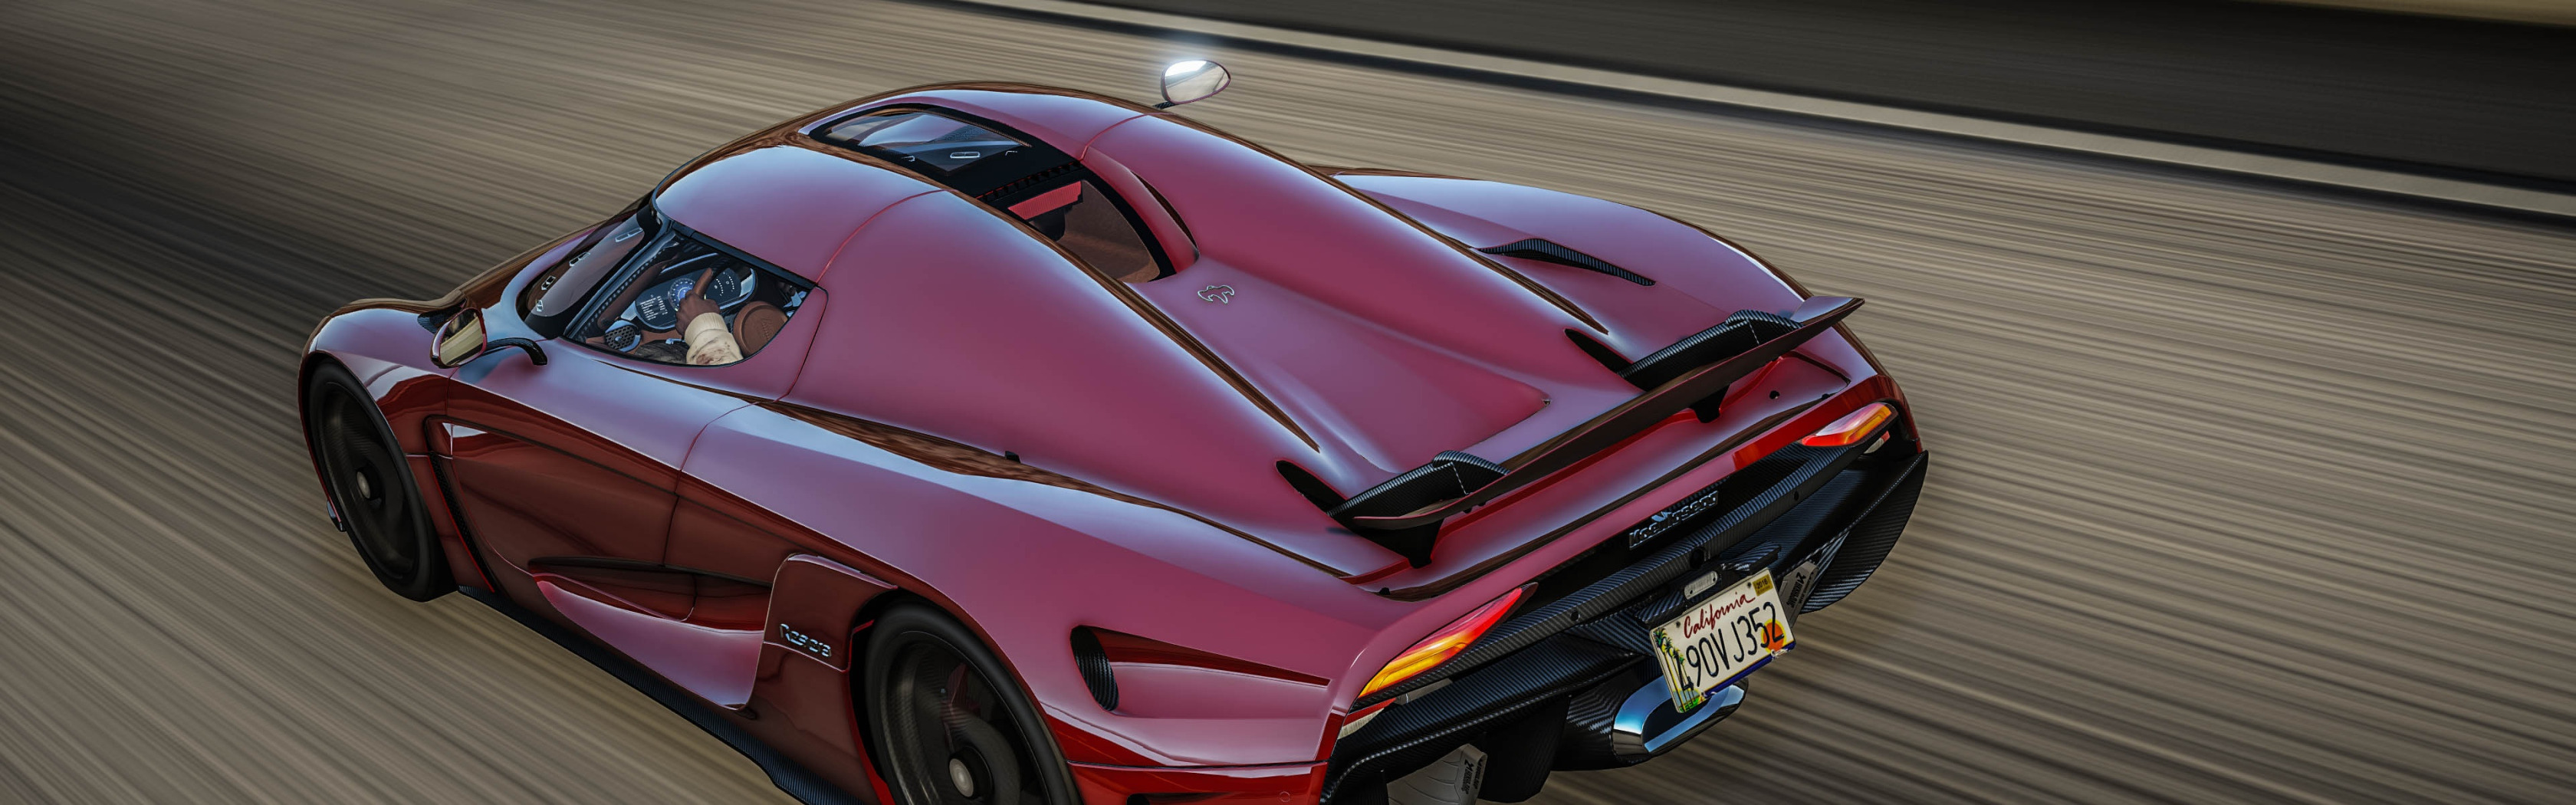 Koenigsegg regera для gta 5 фото 49